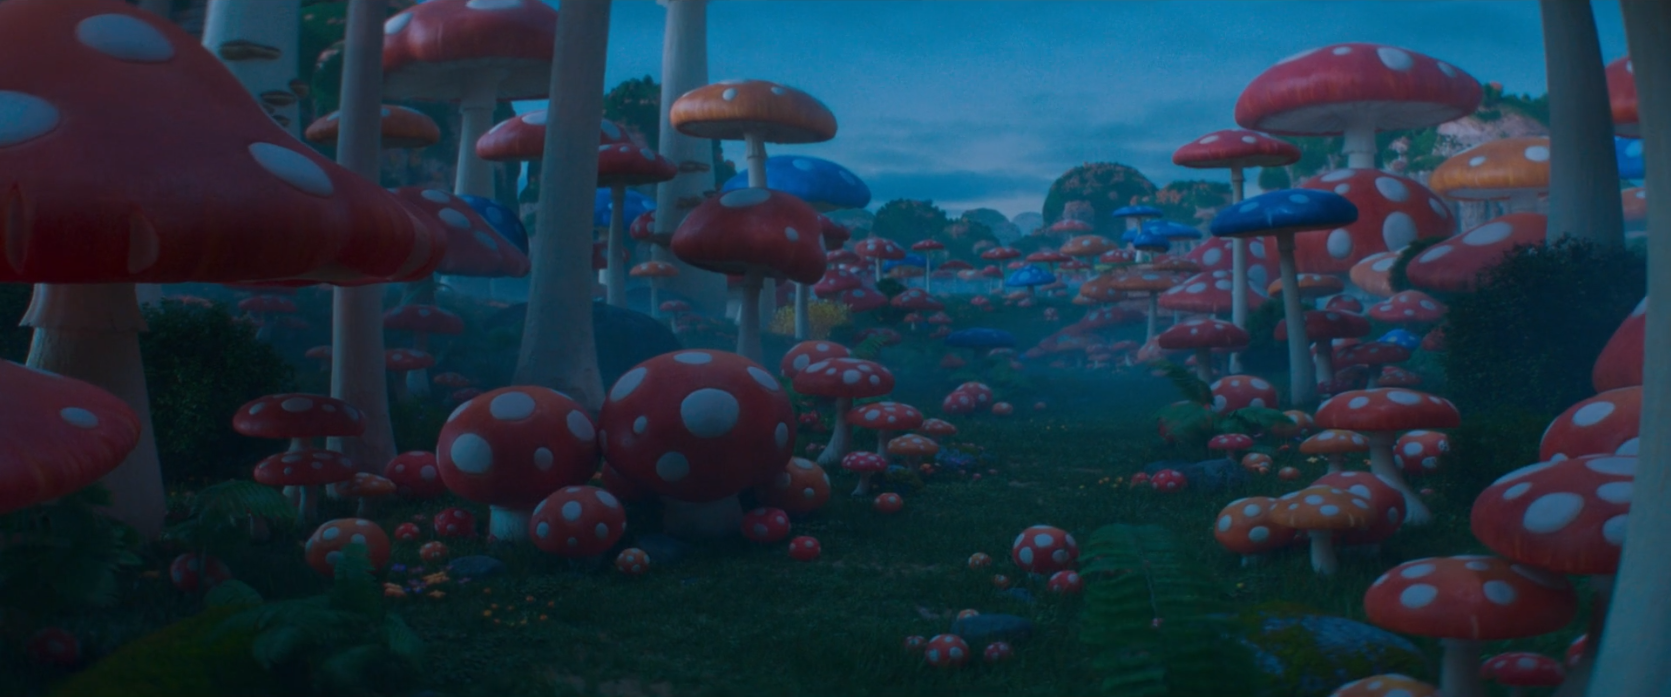 Guide Book: Mushroom Forest (Super Mario Bros. O Filme)